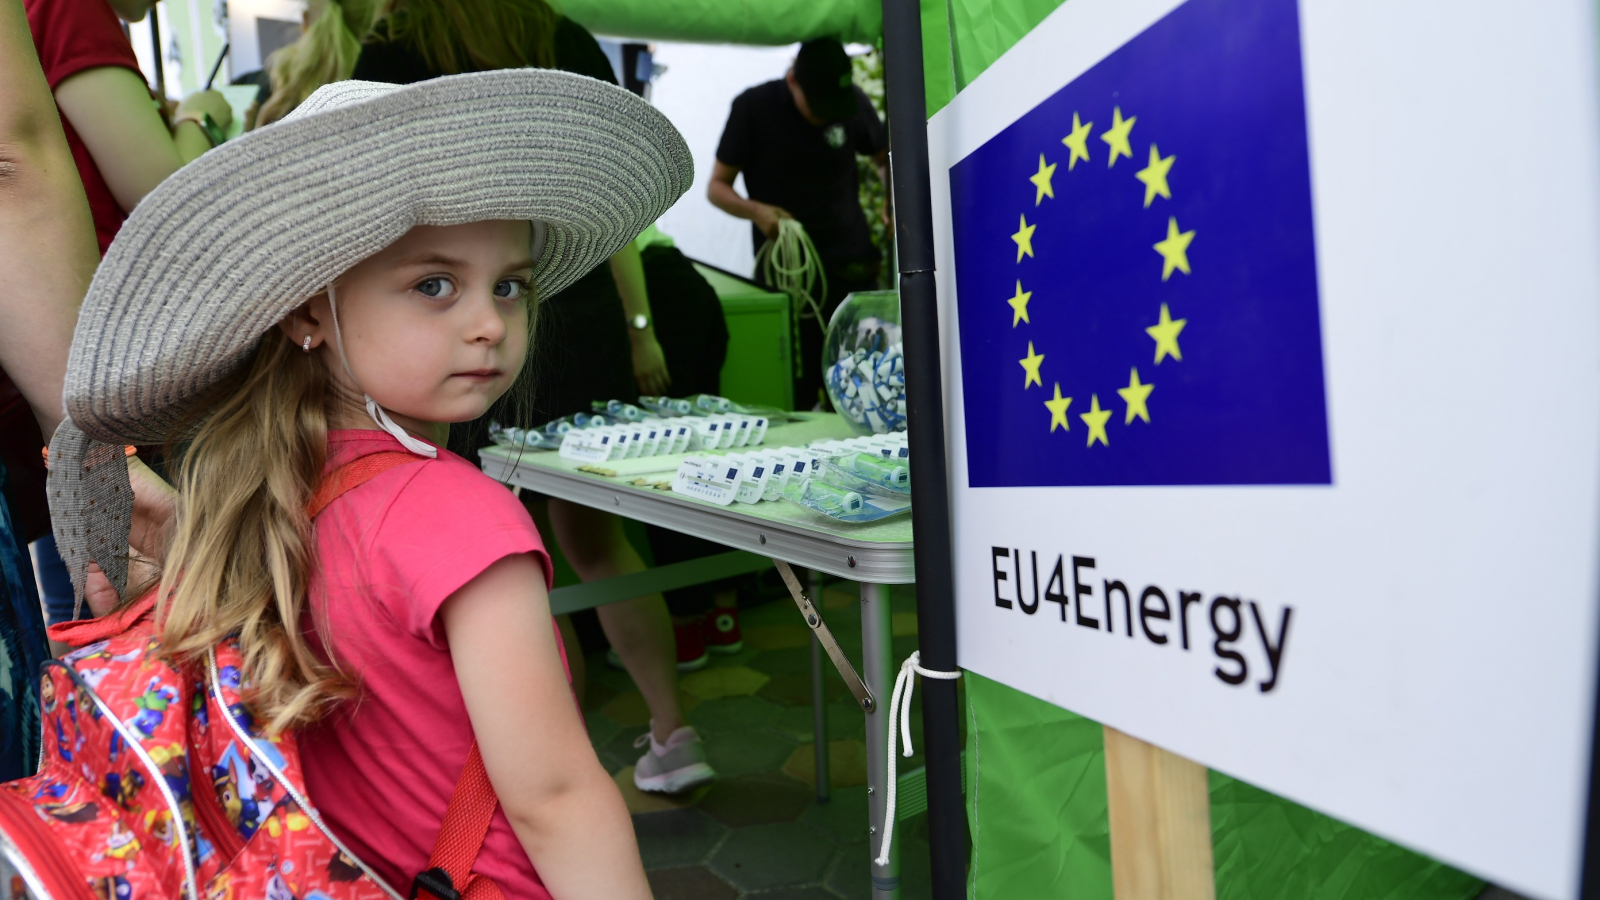 Video: EU4Energy Governance summarises project’s achievements so far